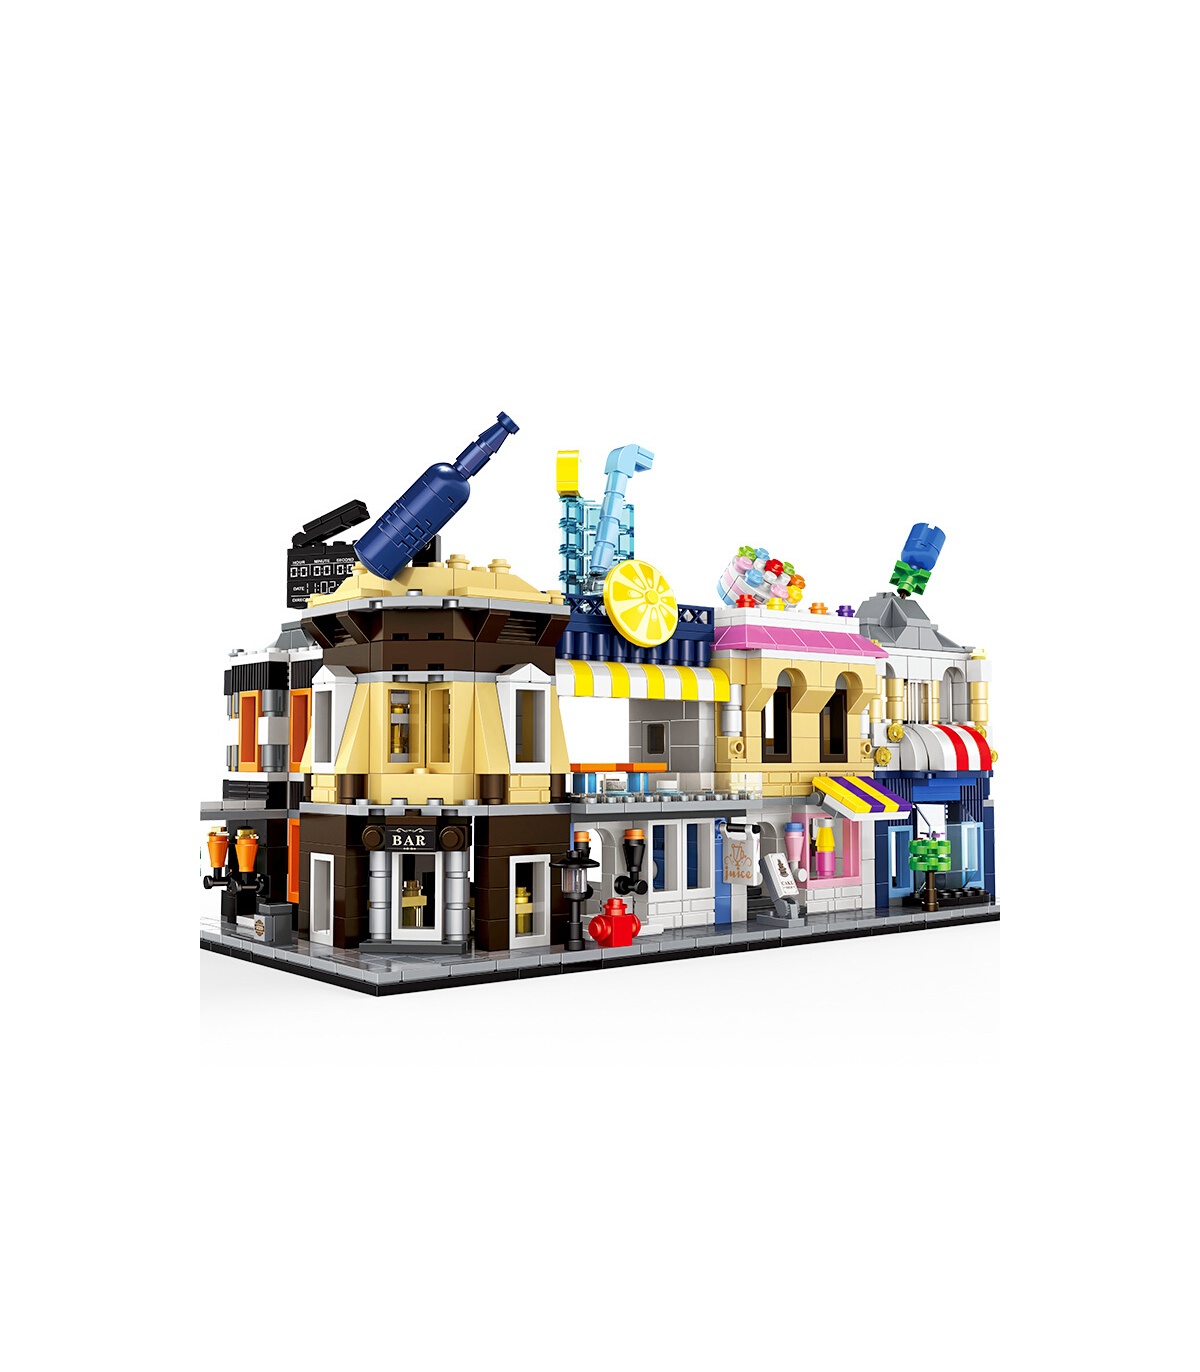 WANGE Street View Mini Architecture Set of 5 2310-2314 Building Toy Set BuildingToyStore.com